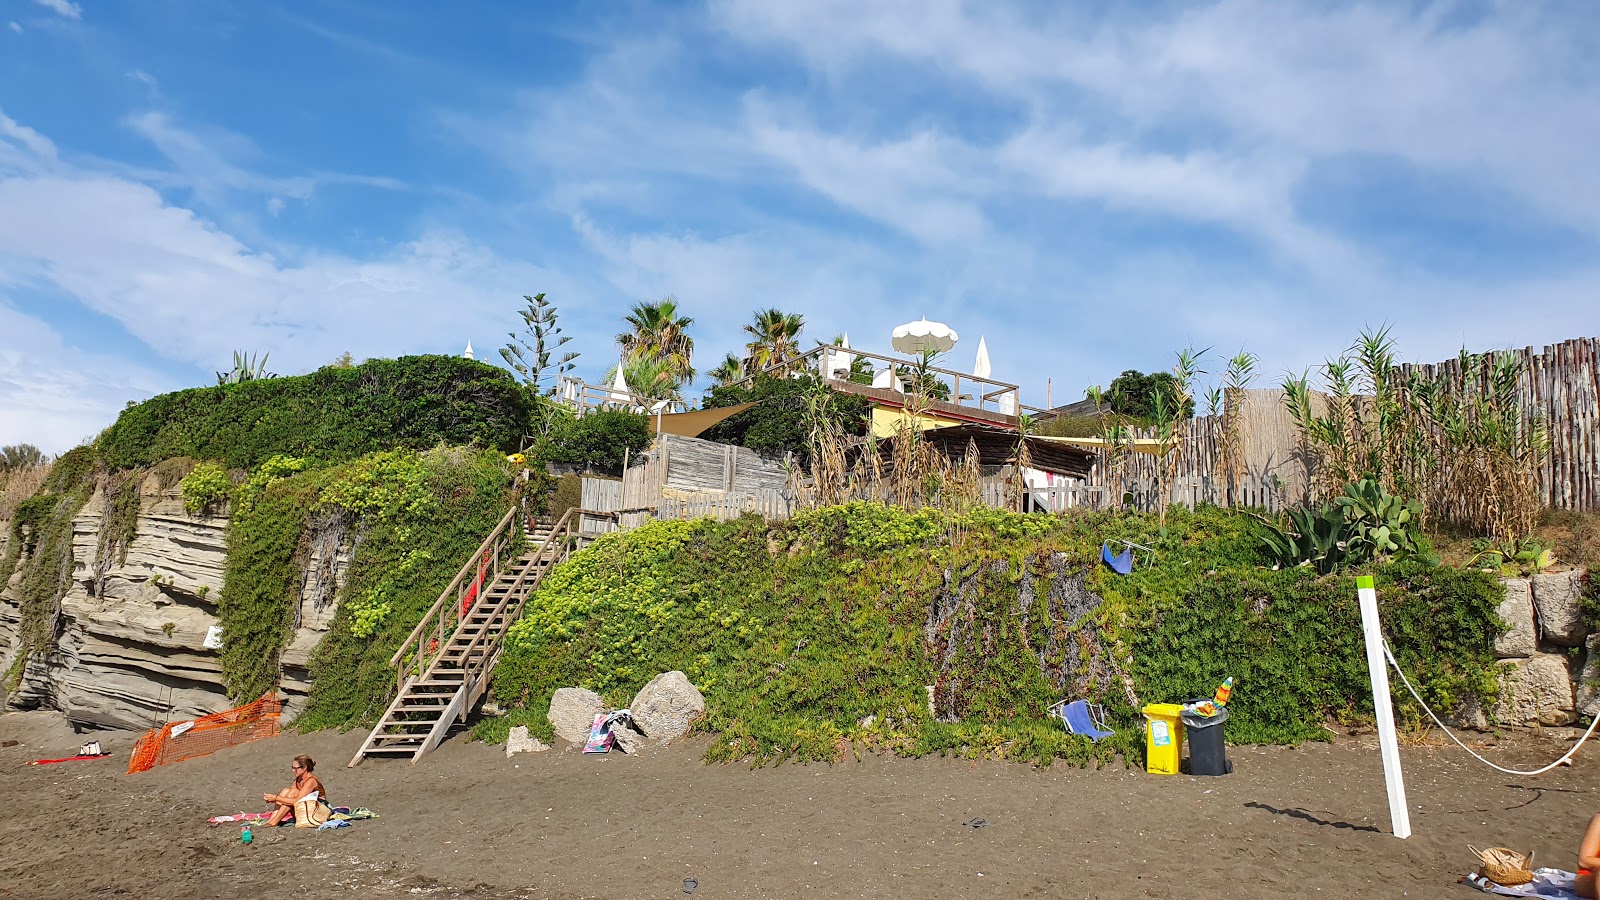 Photo of Spiaggia di Ciraccio and the settlement